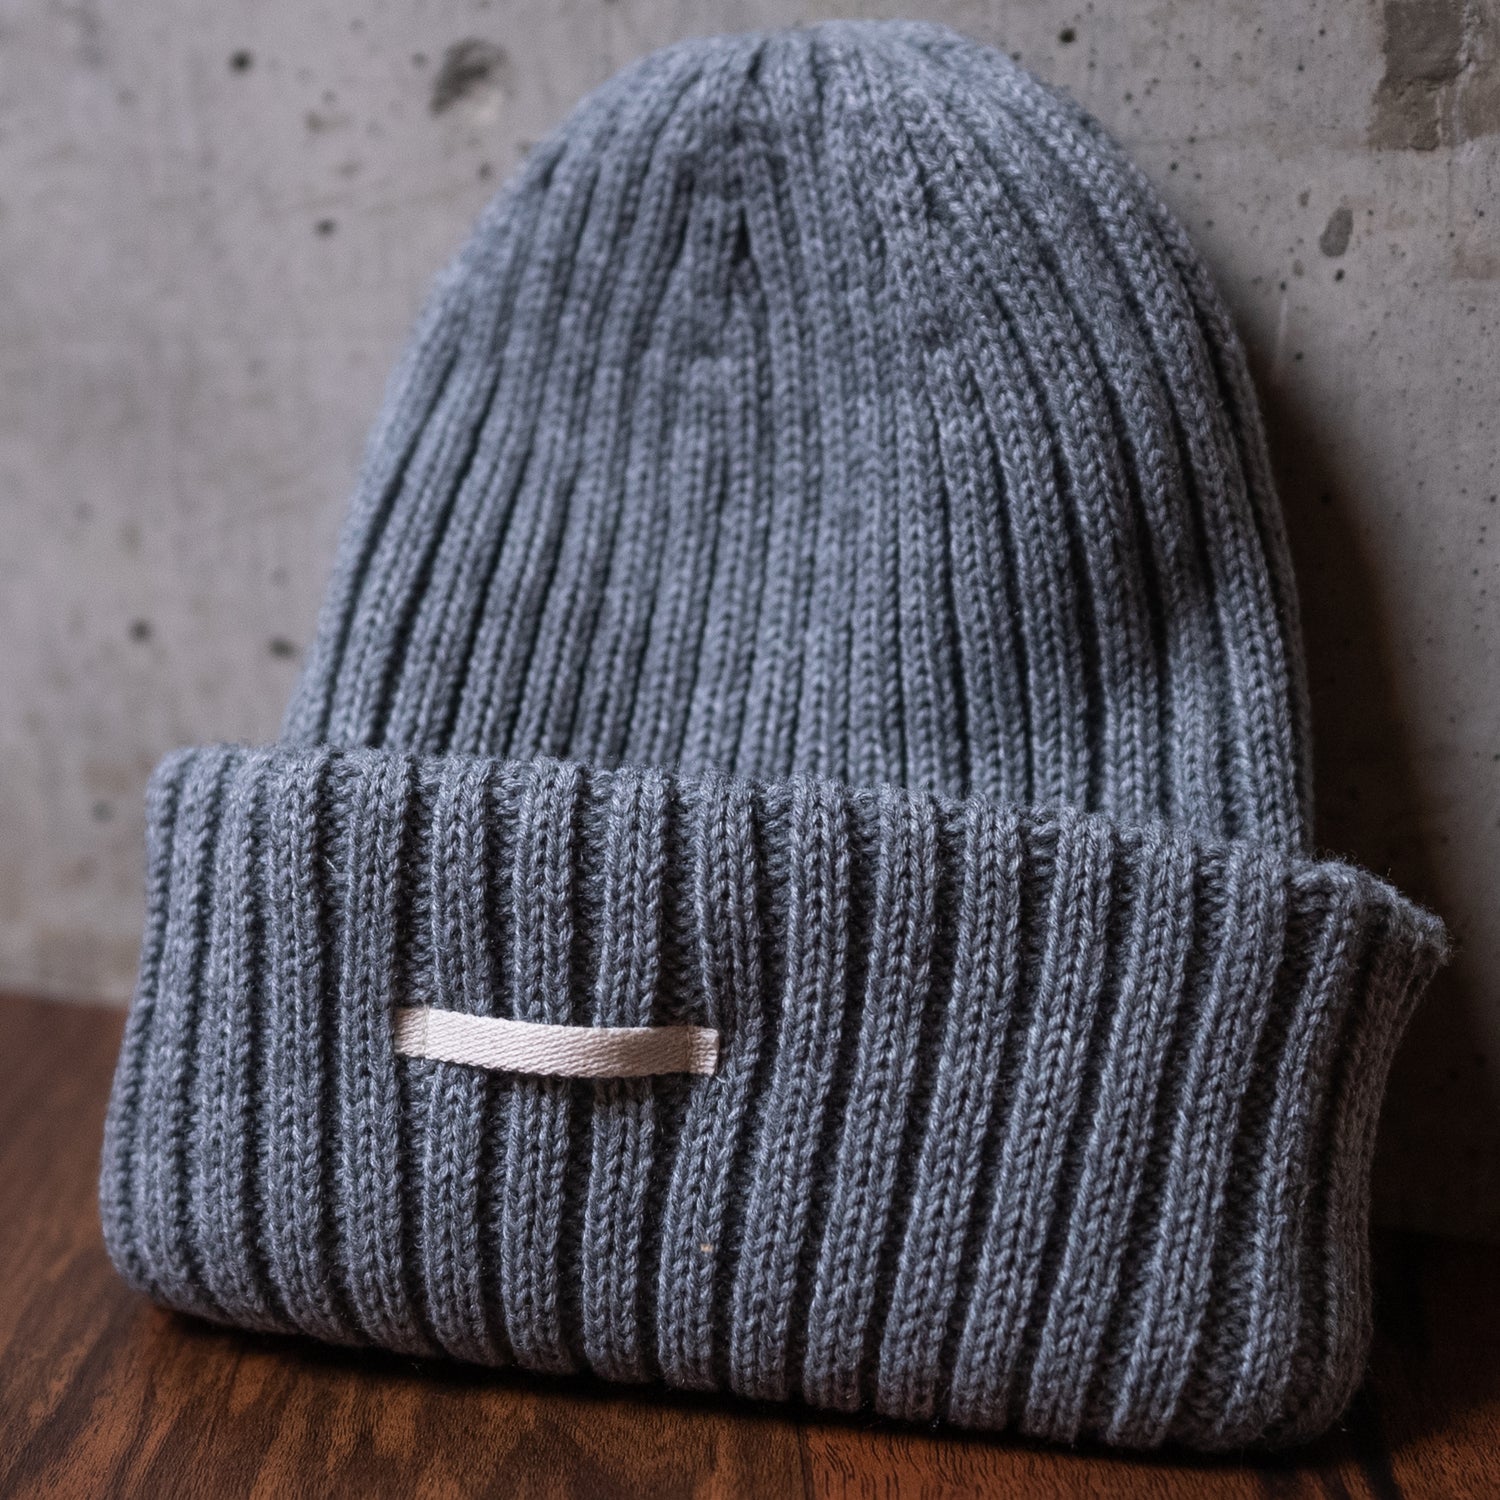 キネマのパイル地のニット帽ですkinema pile room knit cap キネマ 